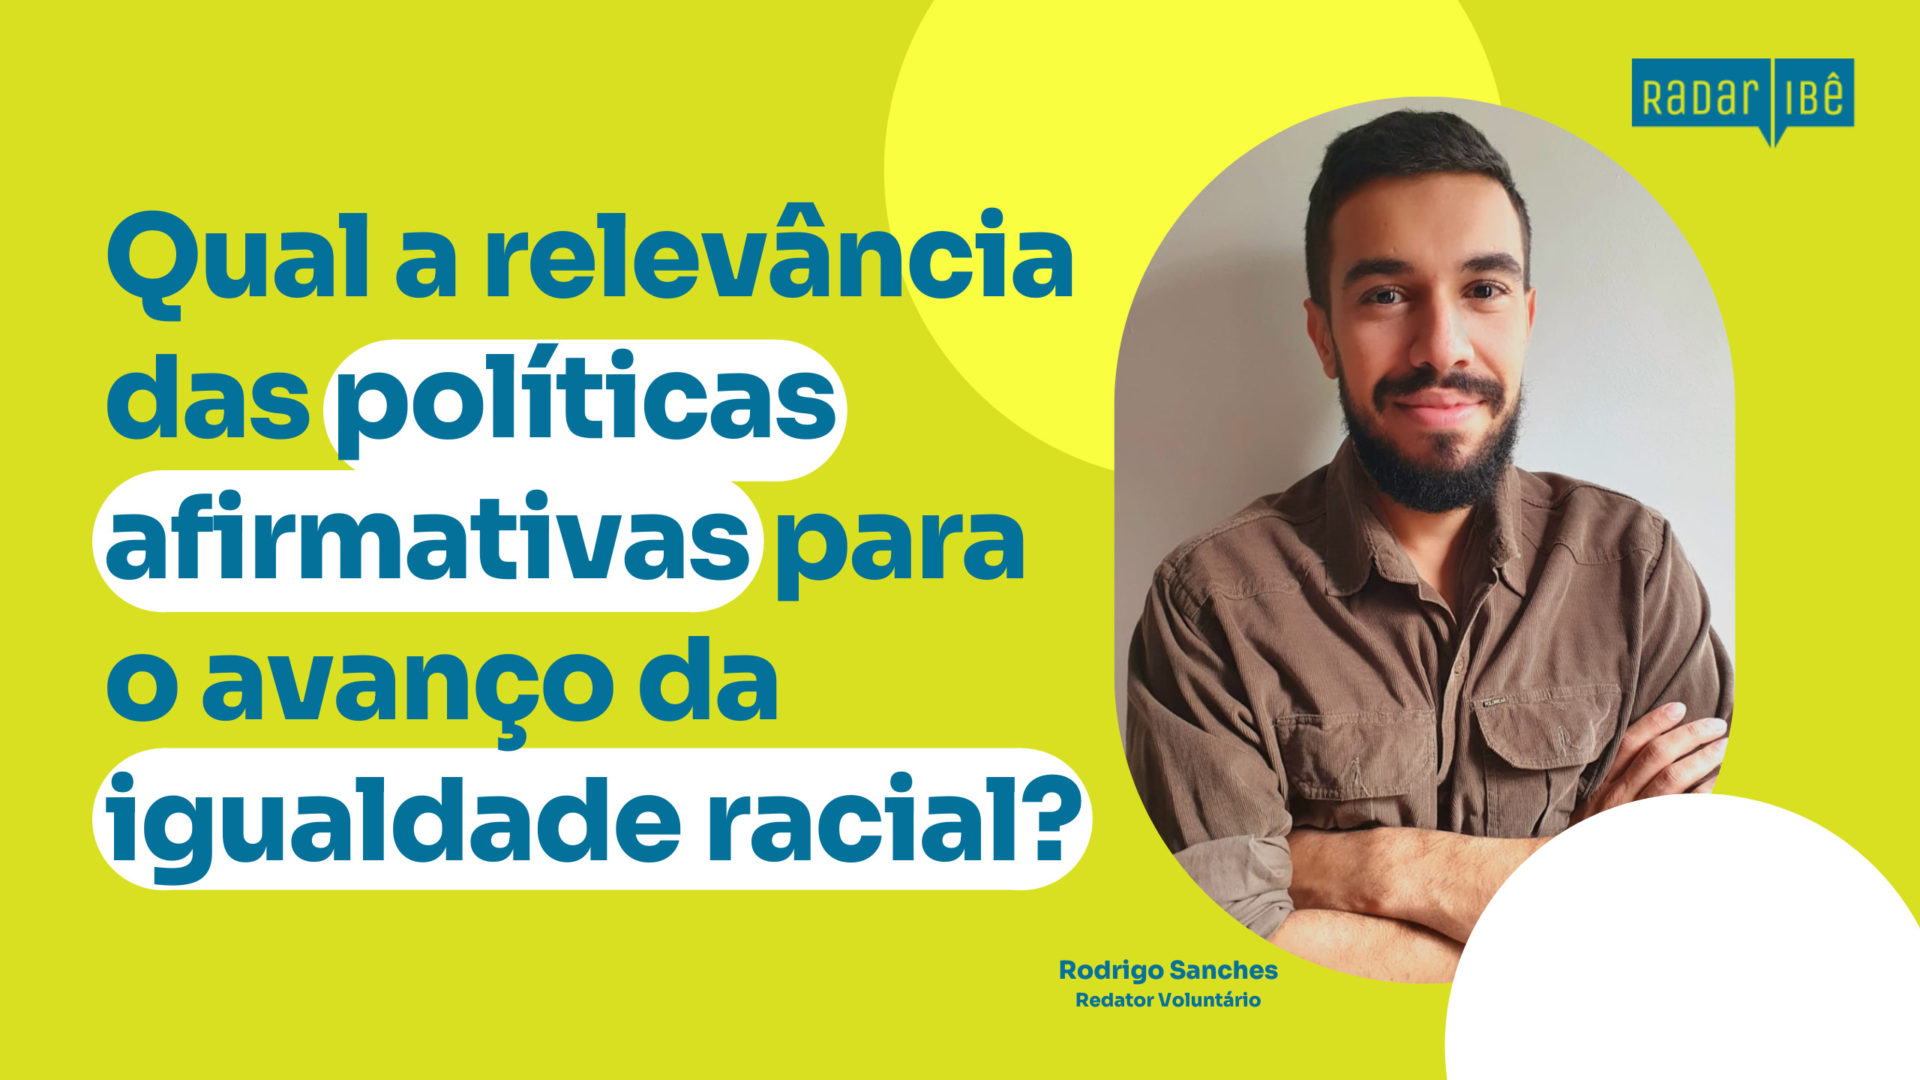 Histórico de Institucionalização das Políticas Públicas de Promoção da Igualdade Racial no Brasil